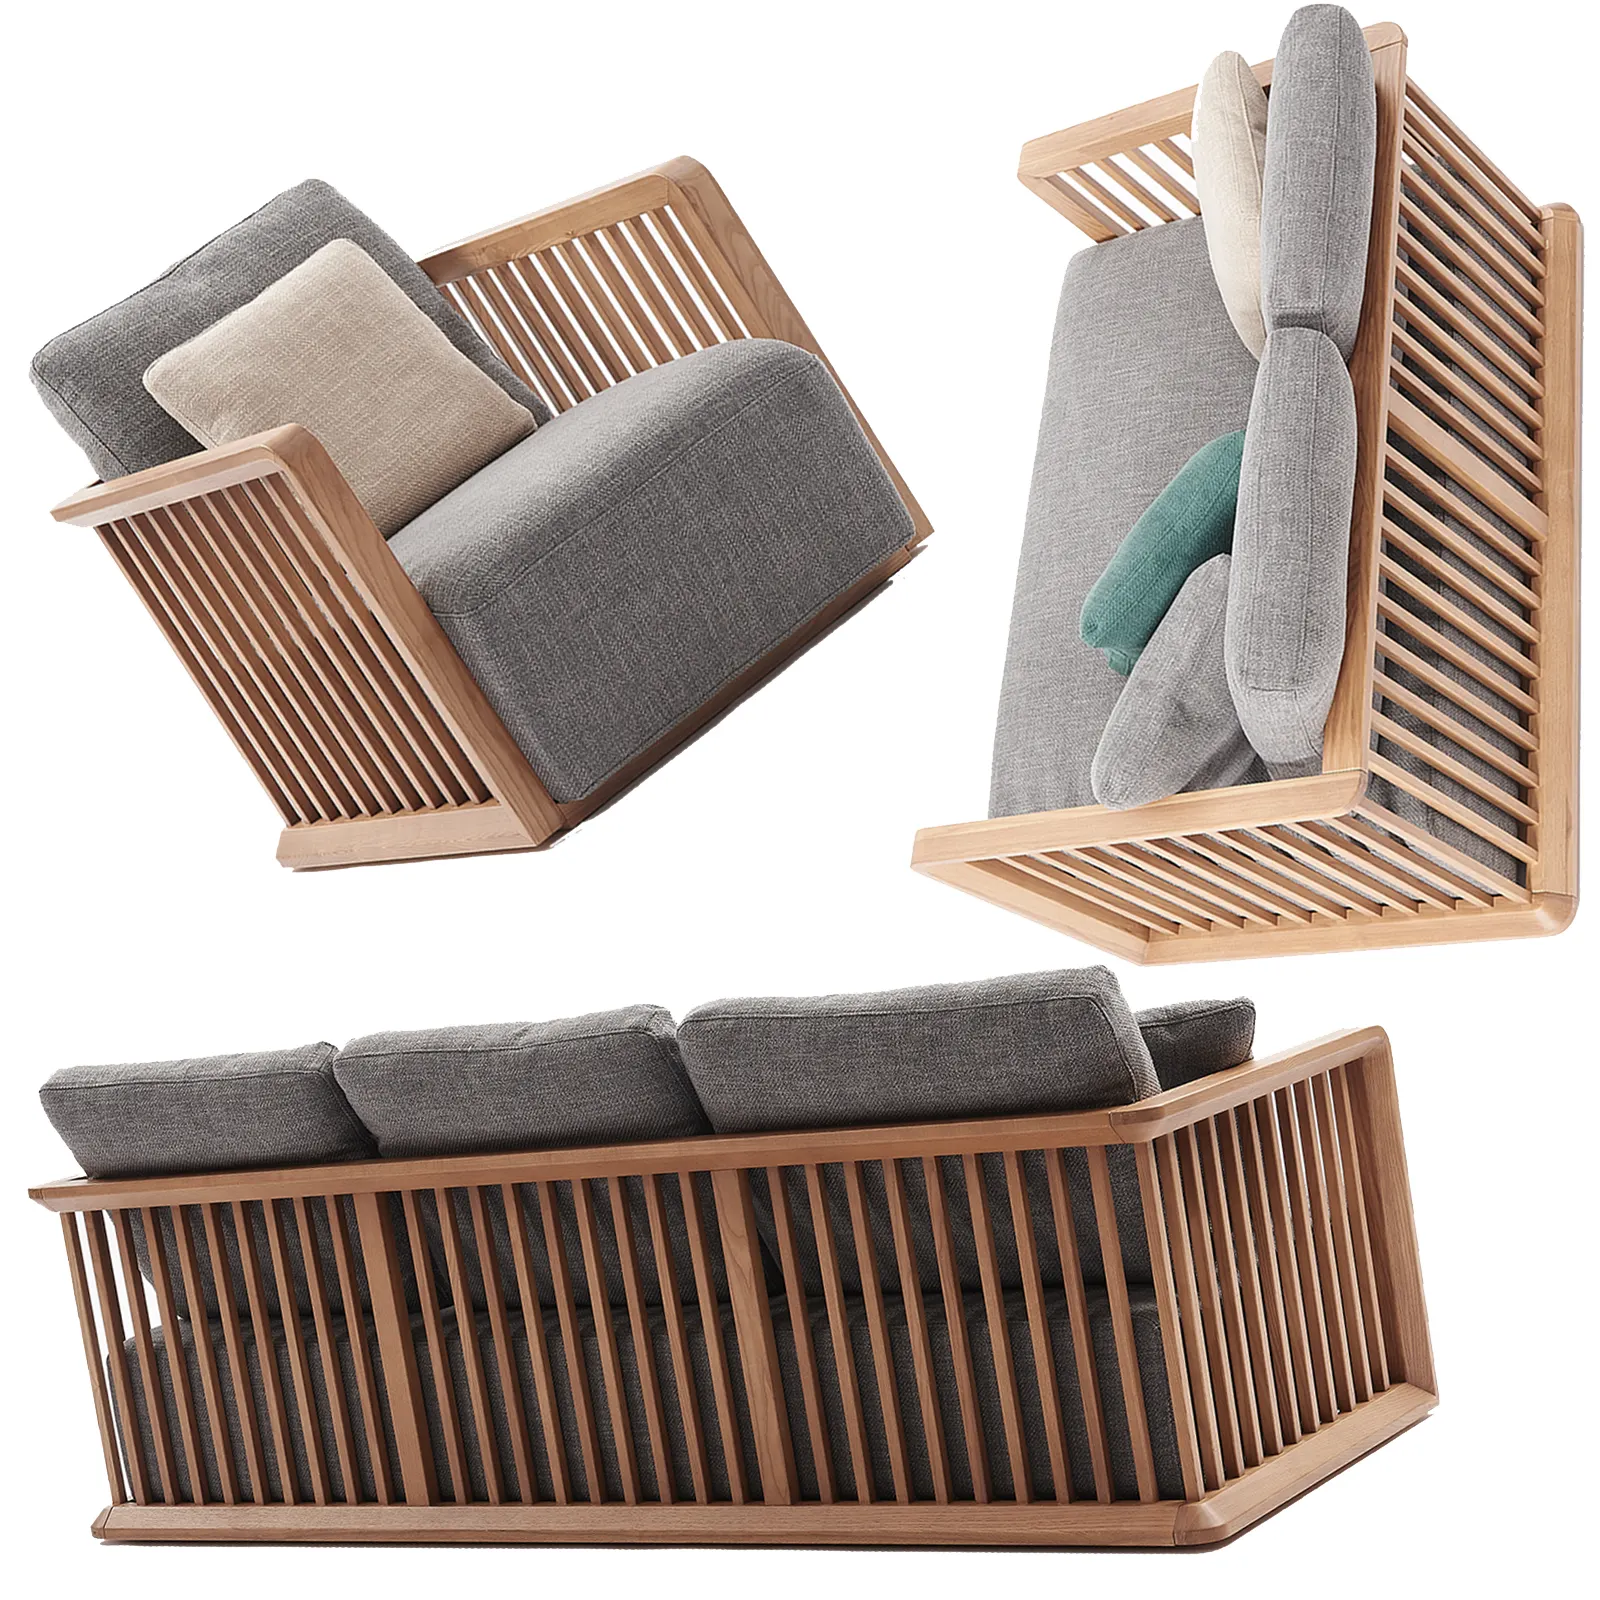 3 סטים 6 מושבים חתך מוצק עץ רהיטים בסלון ספה מרופדת סטי עבור גדול בגודל בית וילה ספה ספה הגדרה